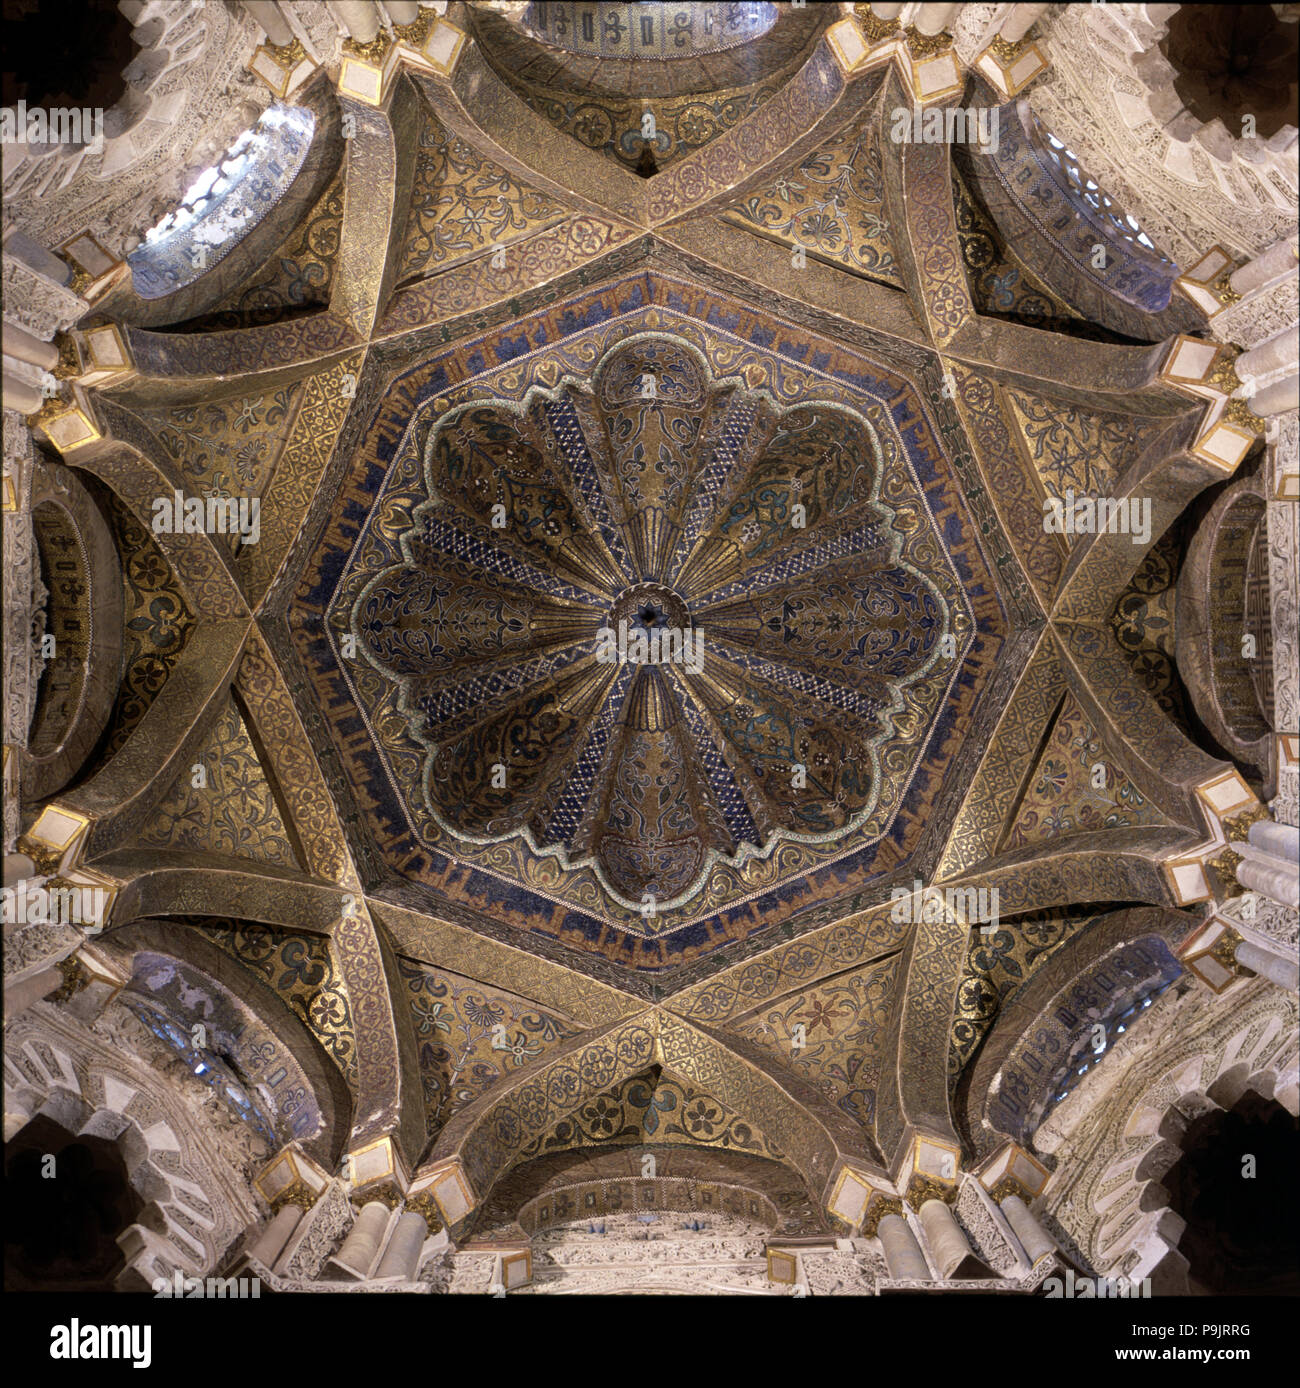 Kuppel des Mihrab der Moschee von Cordoba, beschichtet in feinen byzantinisches Mosaik, vom König ein… Stockfoto